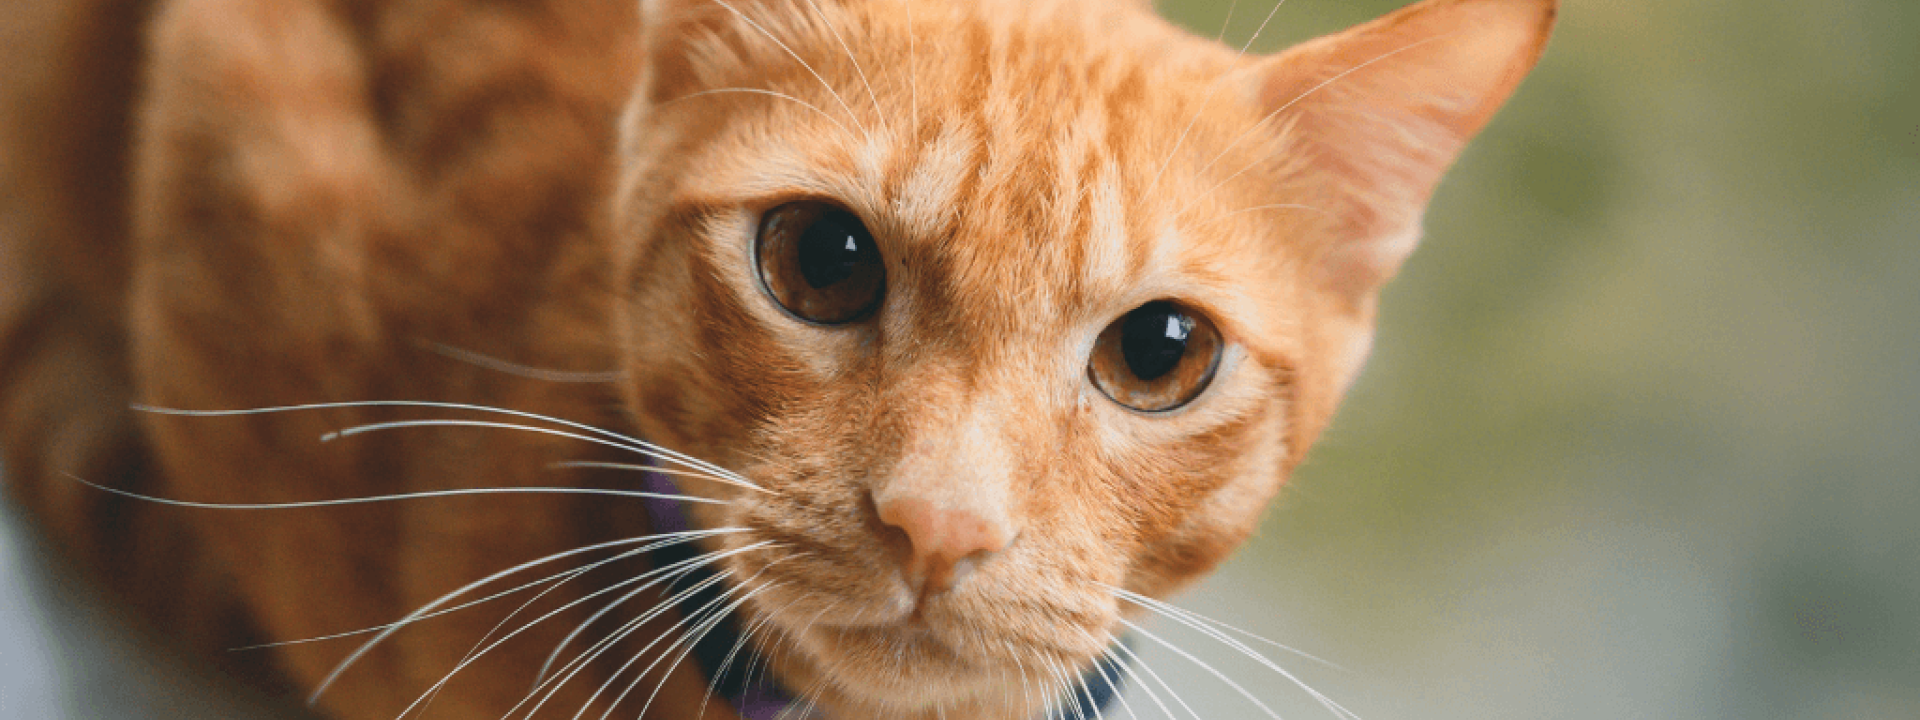 Orange cat close up